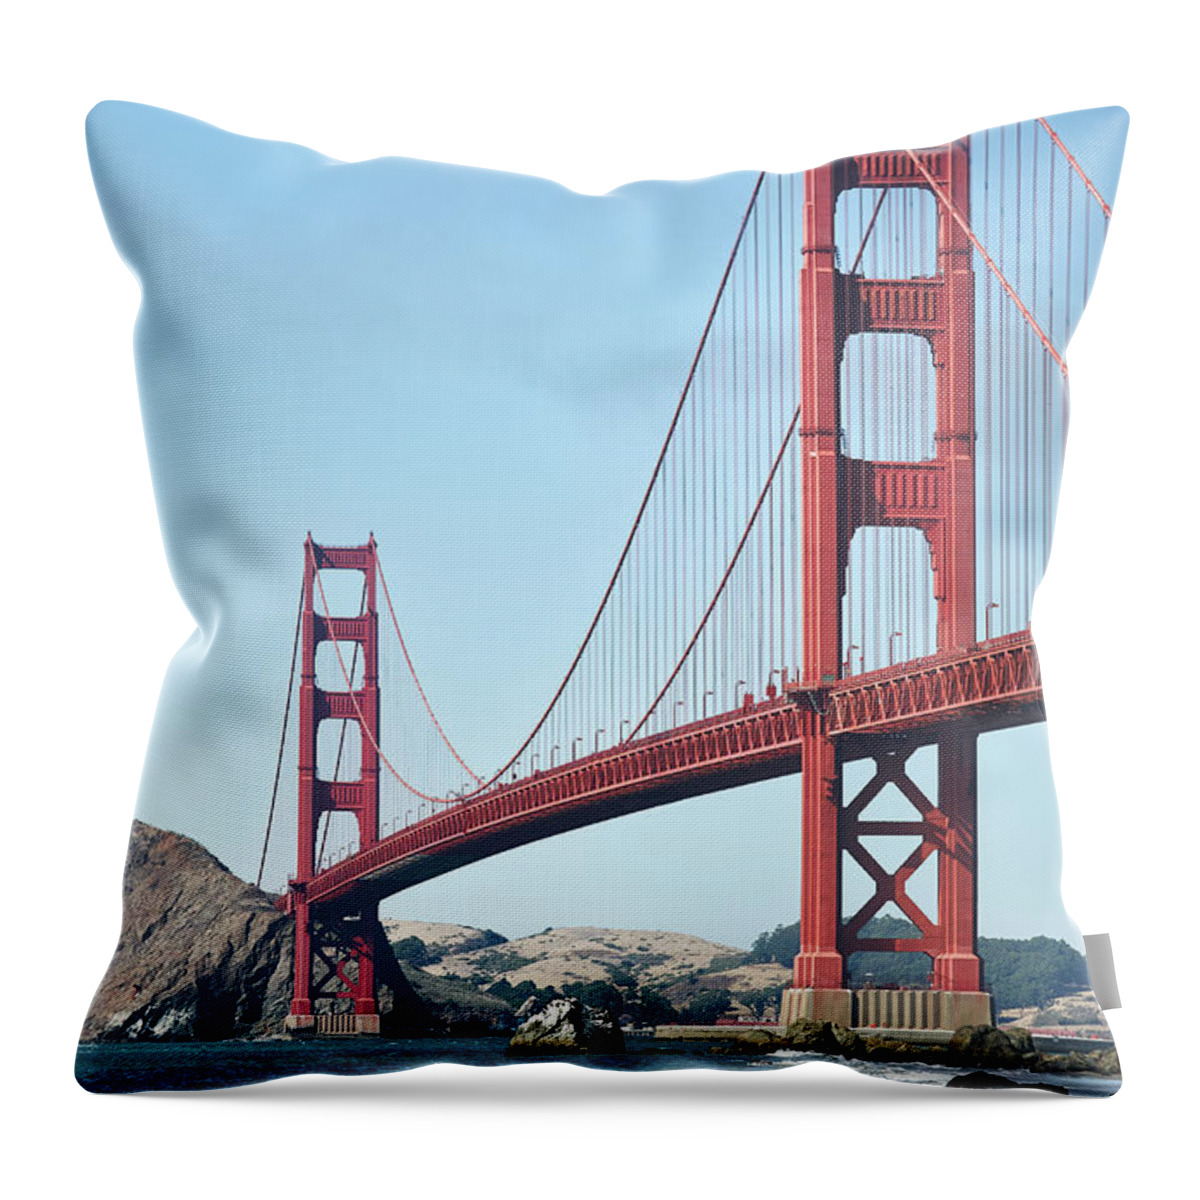 Architecture Throw Pillow featuring the photograph Golden Gate Bridge from Baker Beach 2 #1 by Dean Birinyi